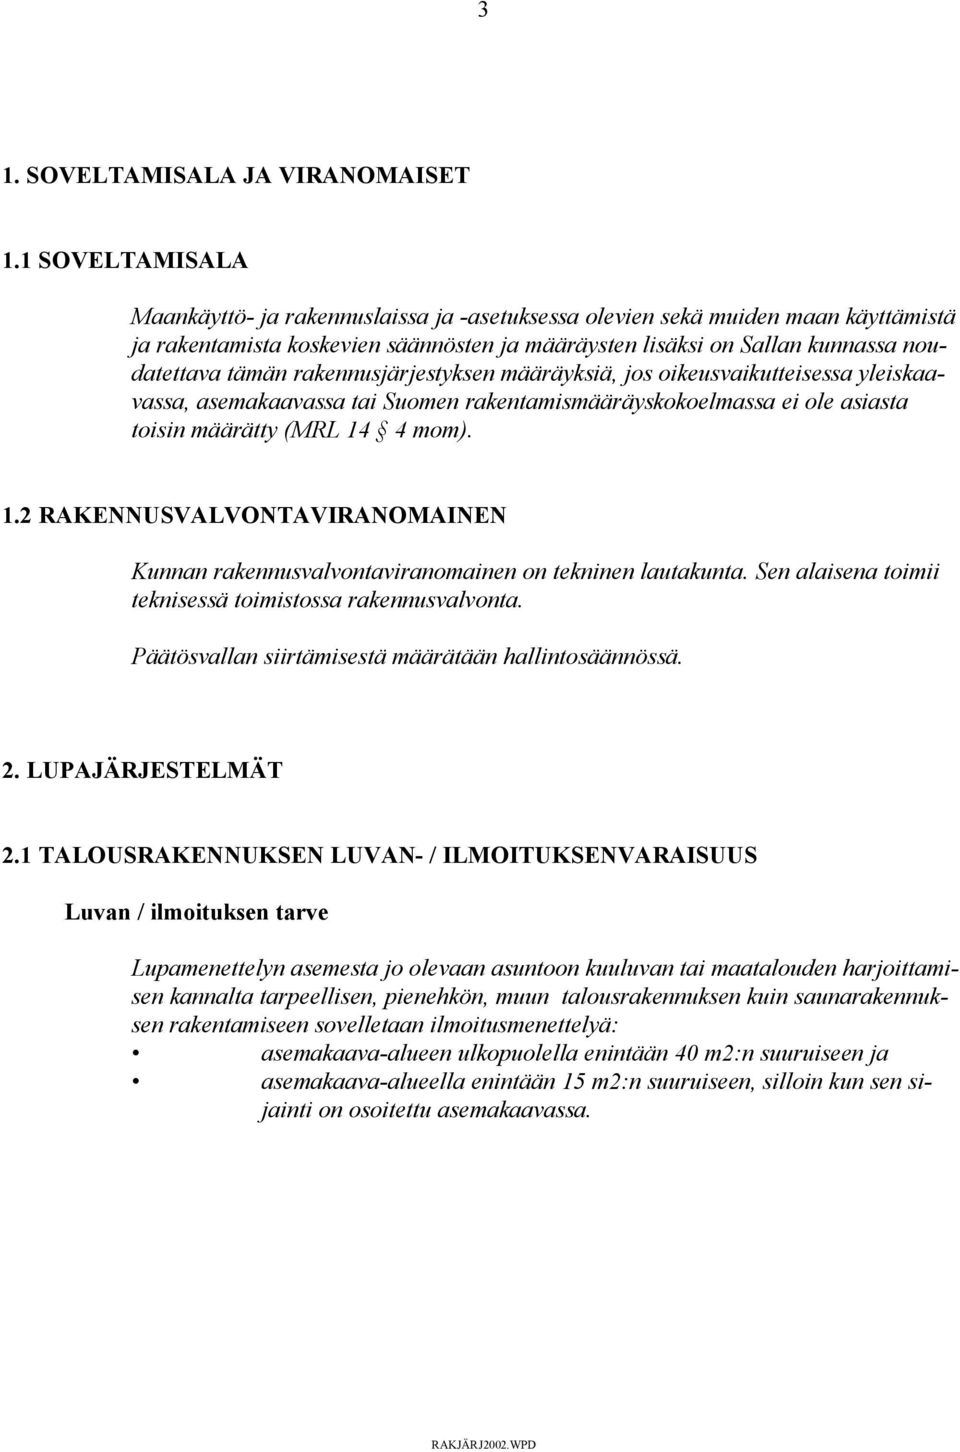 rakennusjärjestyksen määräyksiä, jos oikeusvaikutteisessa yleiskaavassa, asemakaavassa tai Suomen rakentamismääräyskokoelmassa ei ole asiasta toisin määrätty (MRL 14